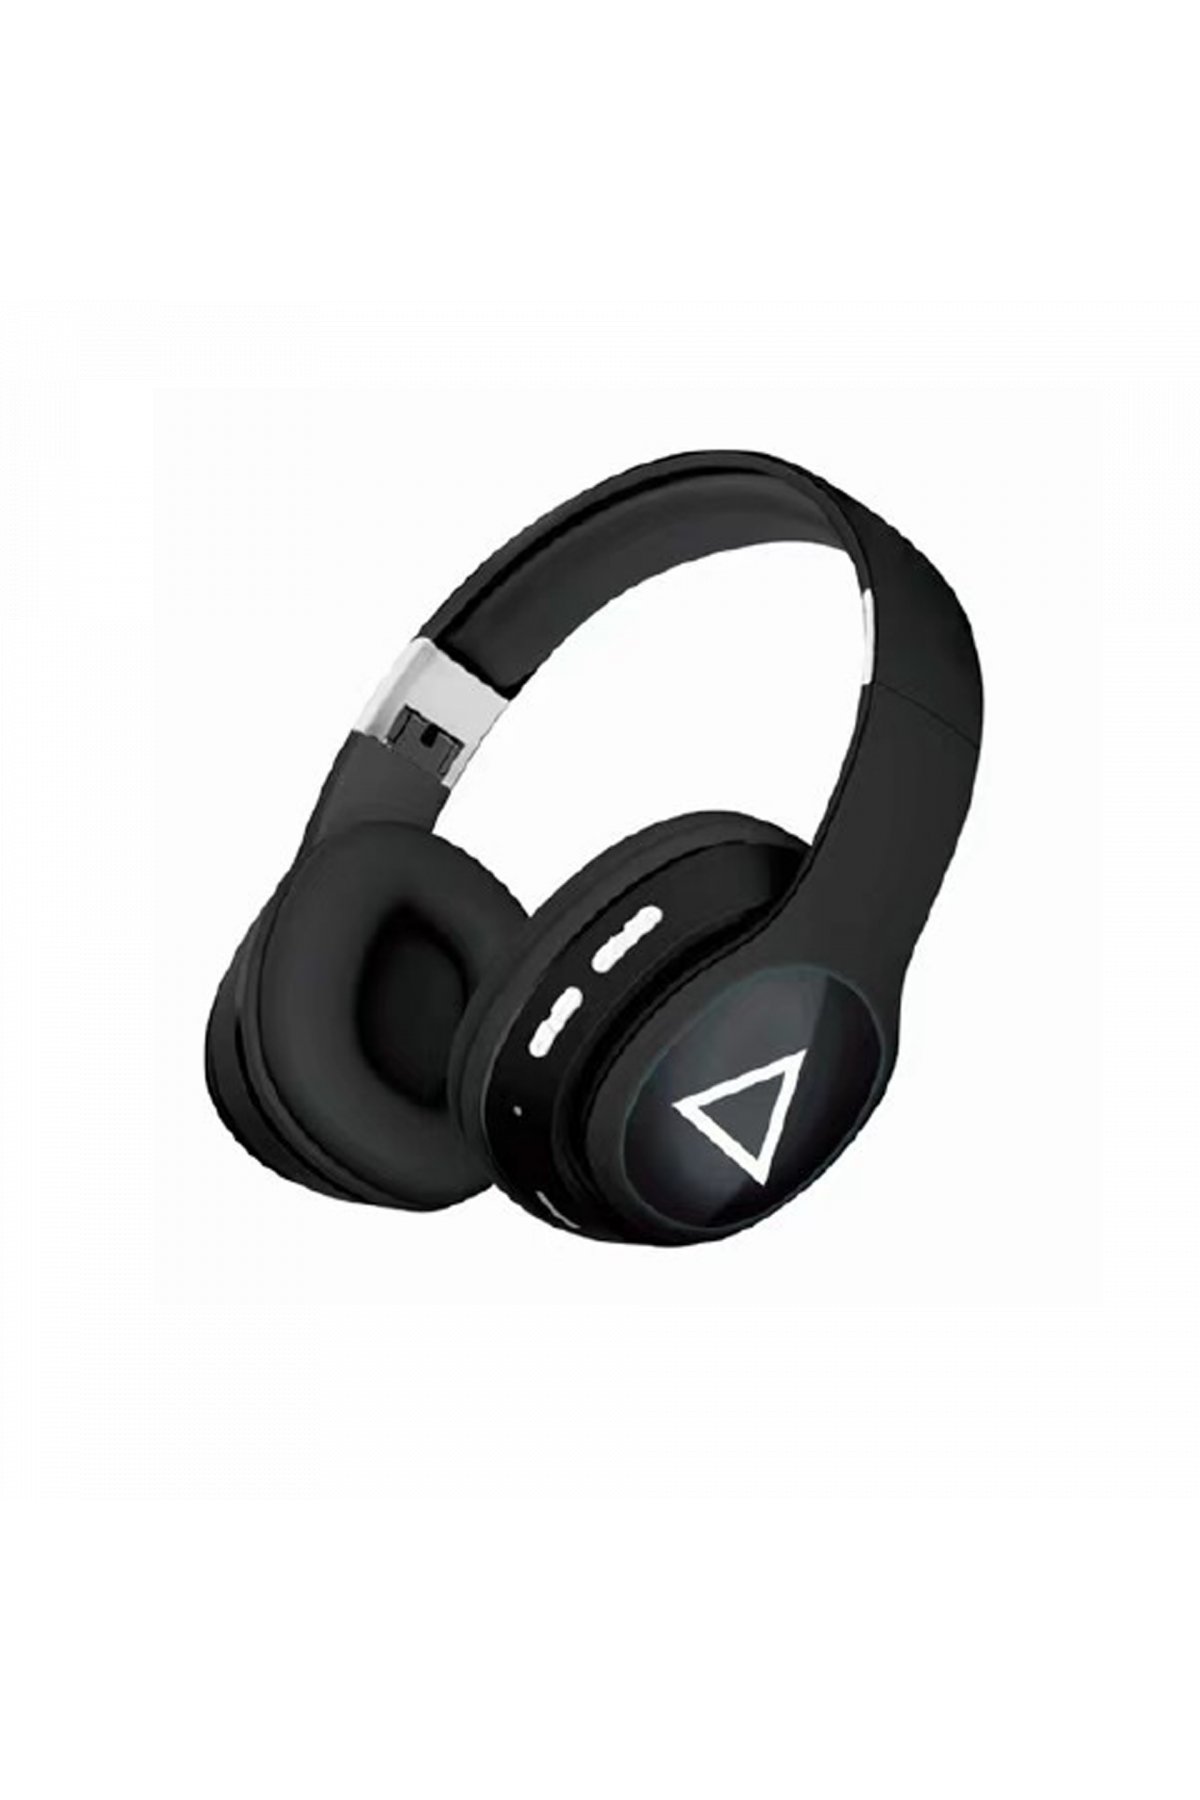 Karler Bass F08 Dijital Şarj Göstergeli TWS Bluetooth Kulaklık - Siyah